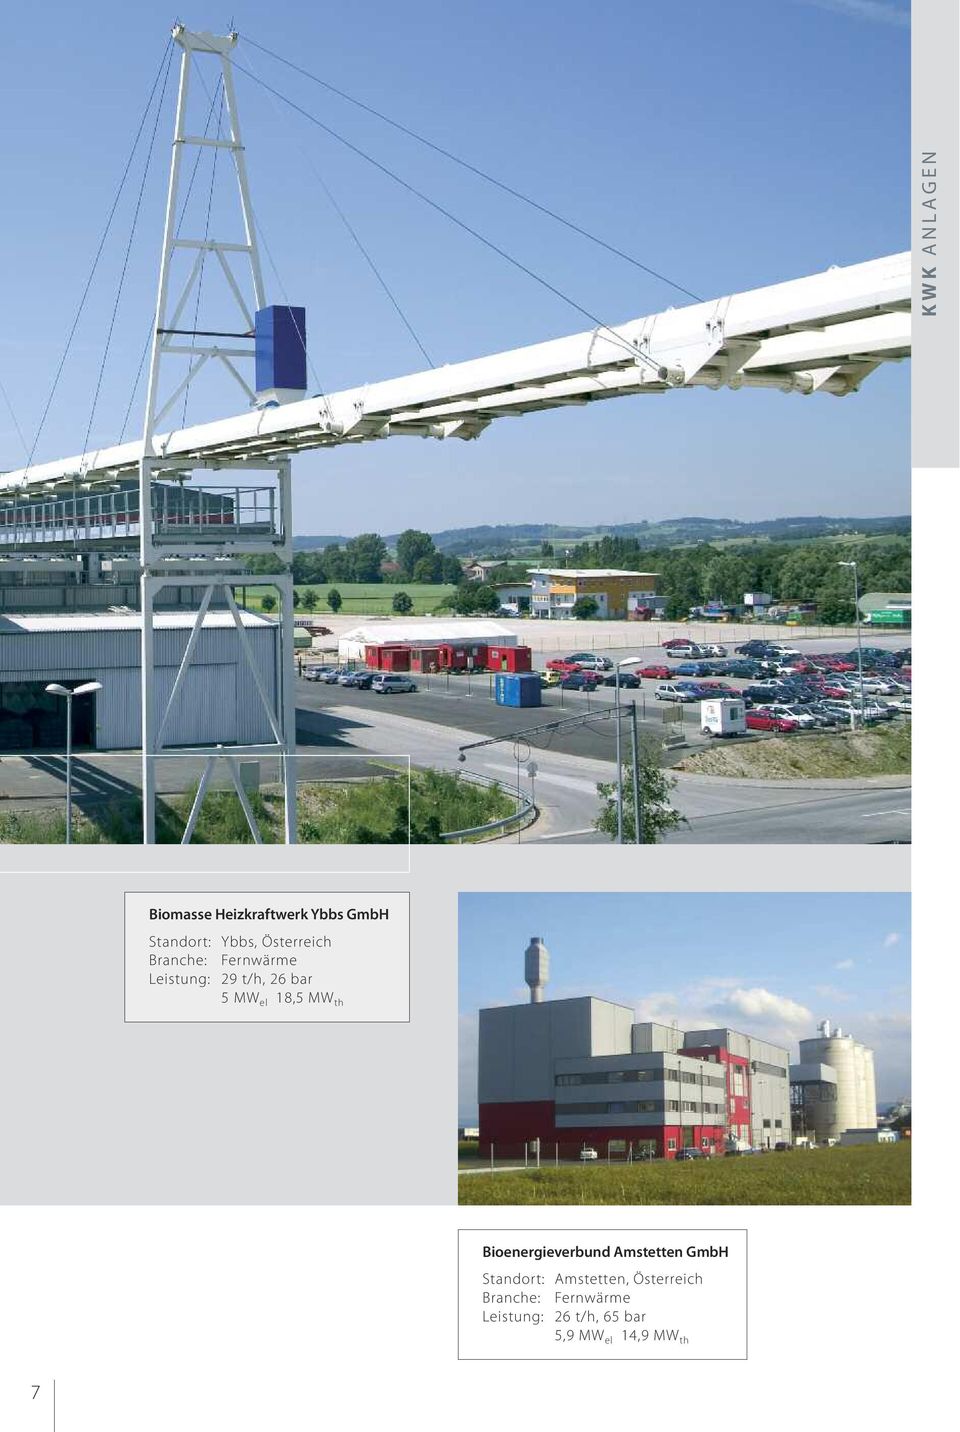 el 18,5 MW th Bioenergieverbund Amstetten GmbH Standort: